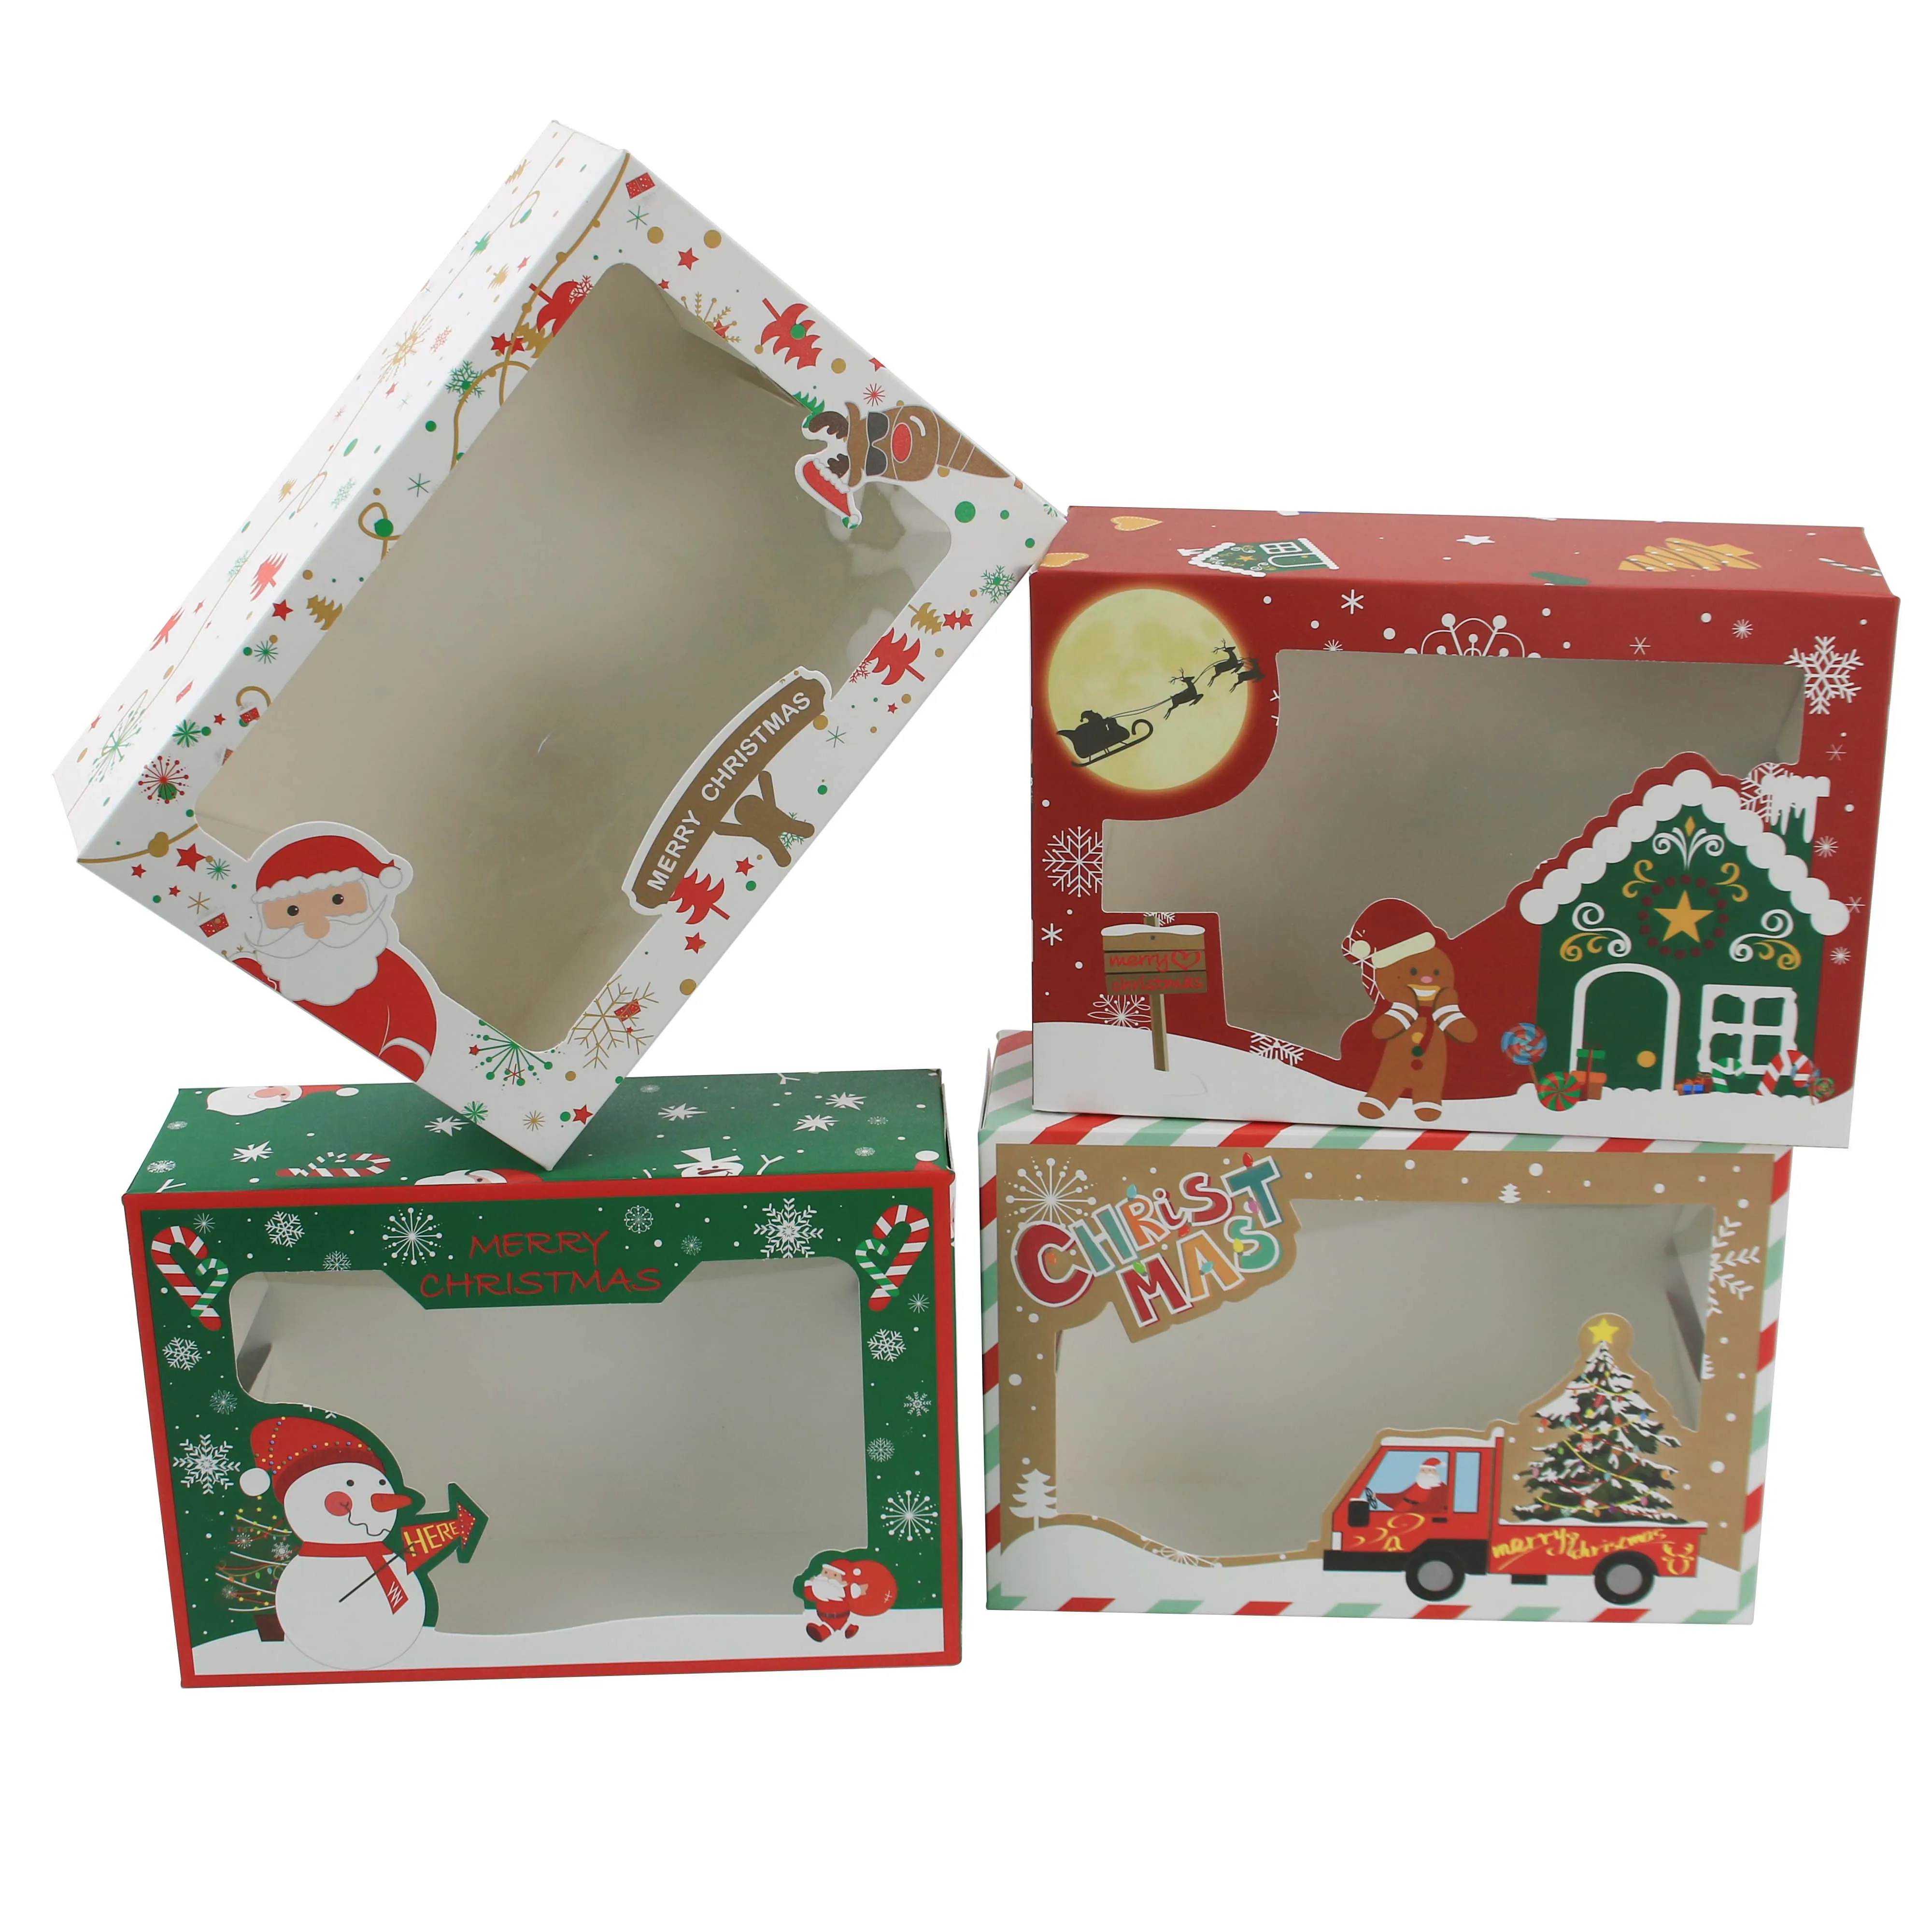 Weihnachts plätzchen boxen Donut-Geschenk boxen Bäckerei box mit klarem Fenster, grünen und roten Weihnachts designs mit Weihnachts bändern als Geschenk